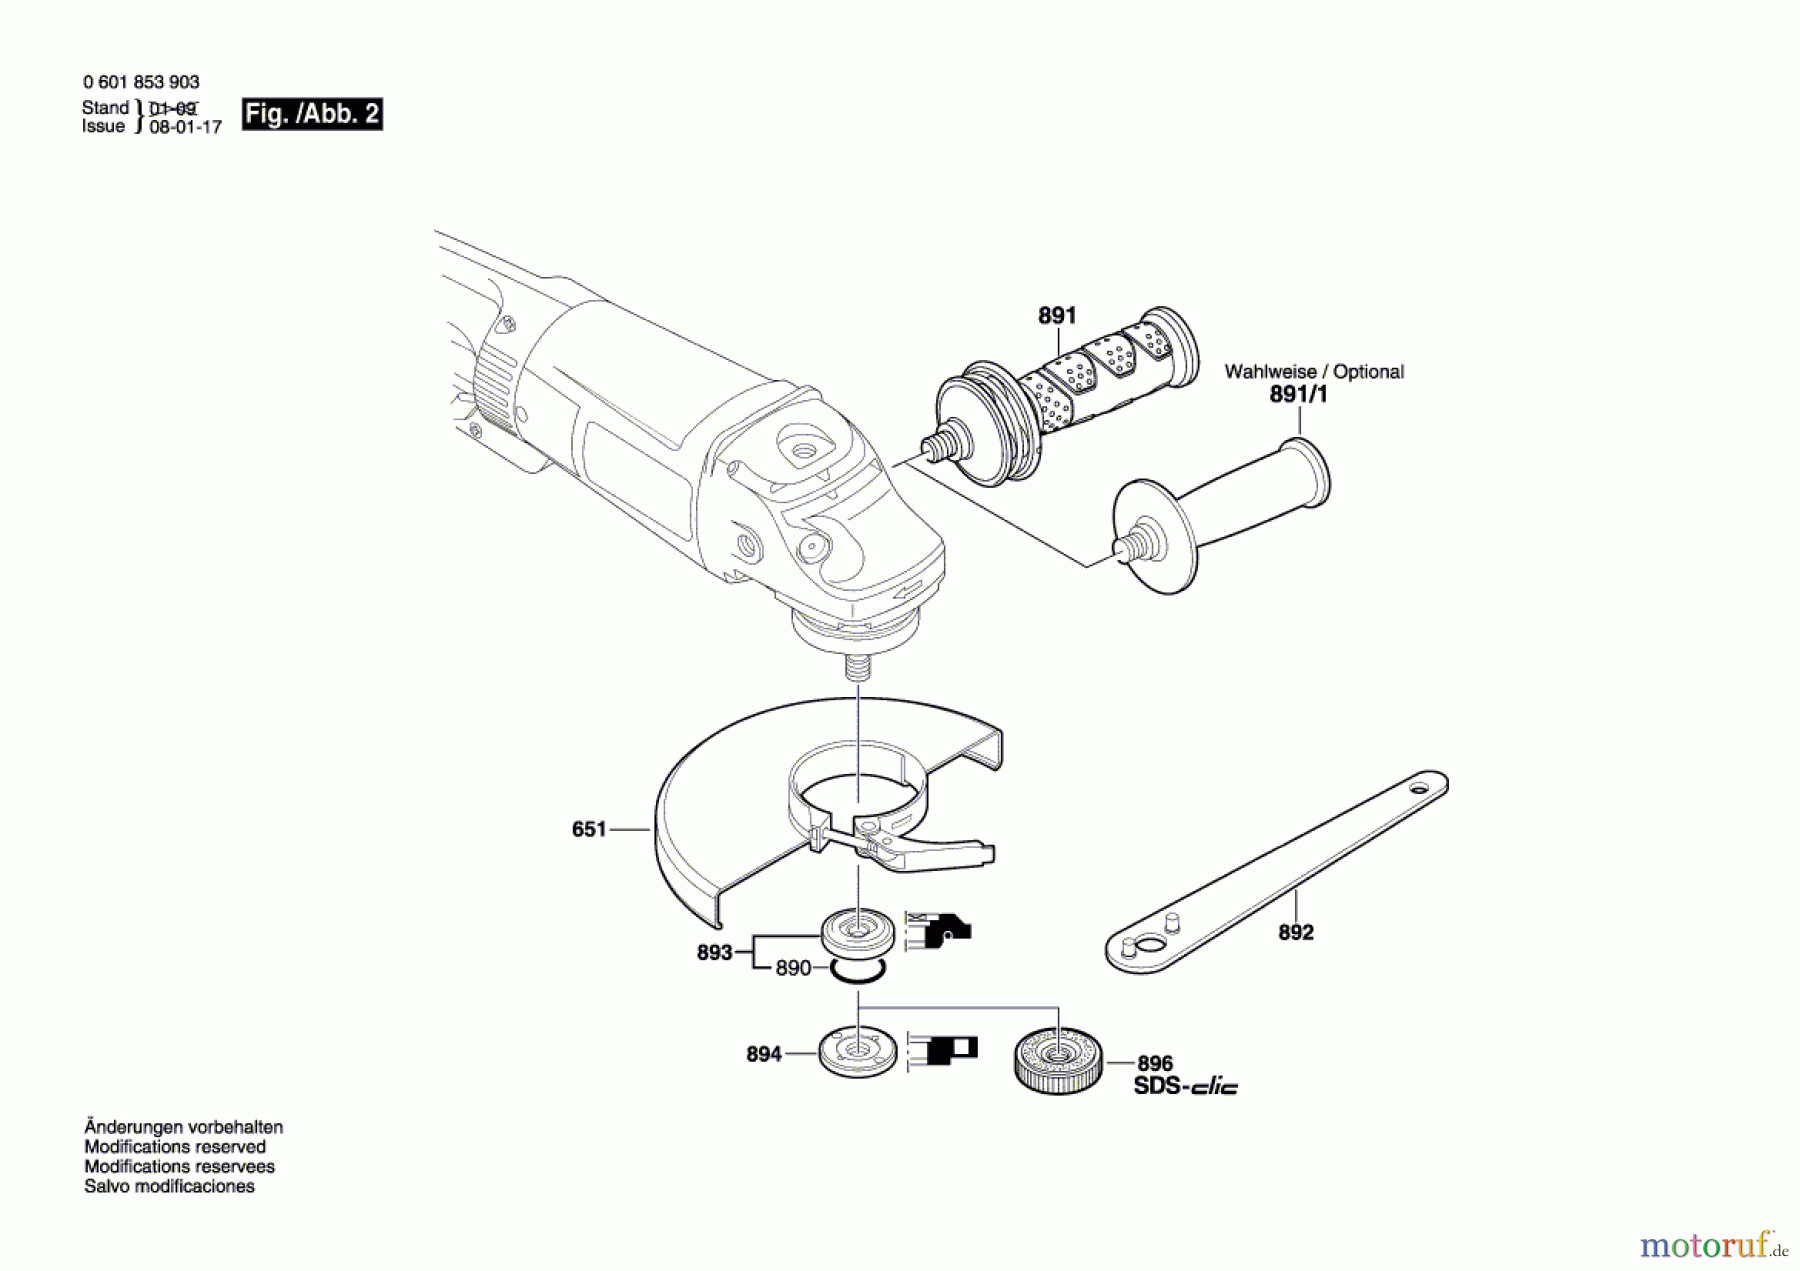  Bosch Werkzeug Winkelschleifer GWS 24-180 JB Seite 2